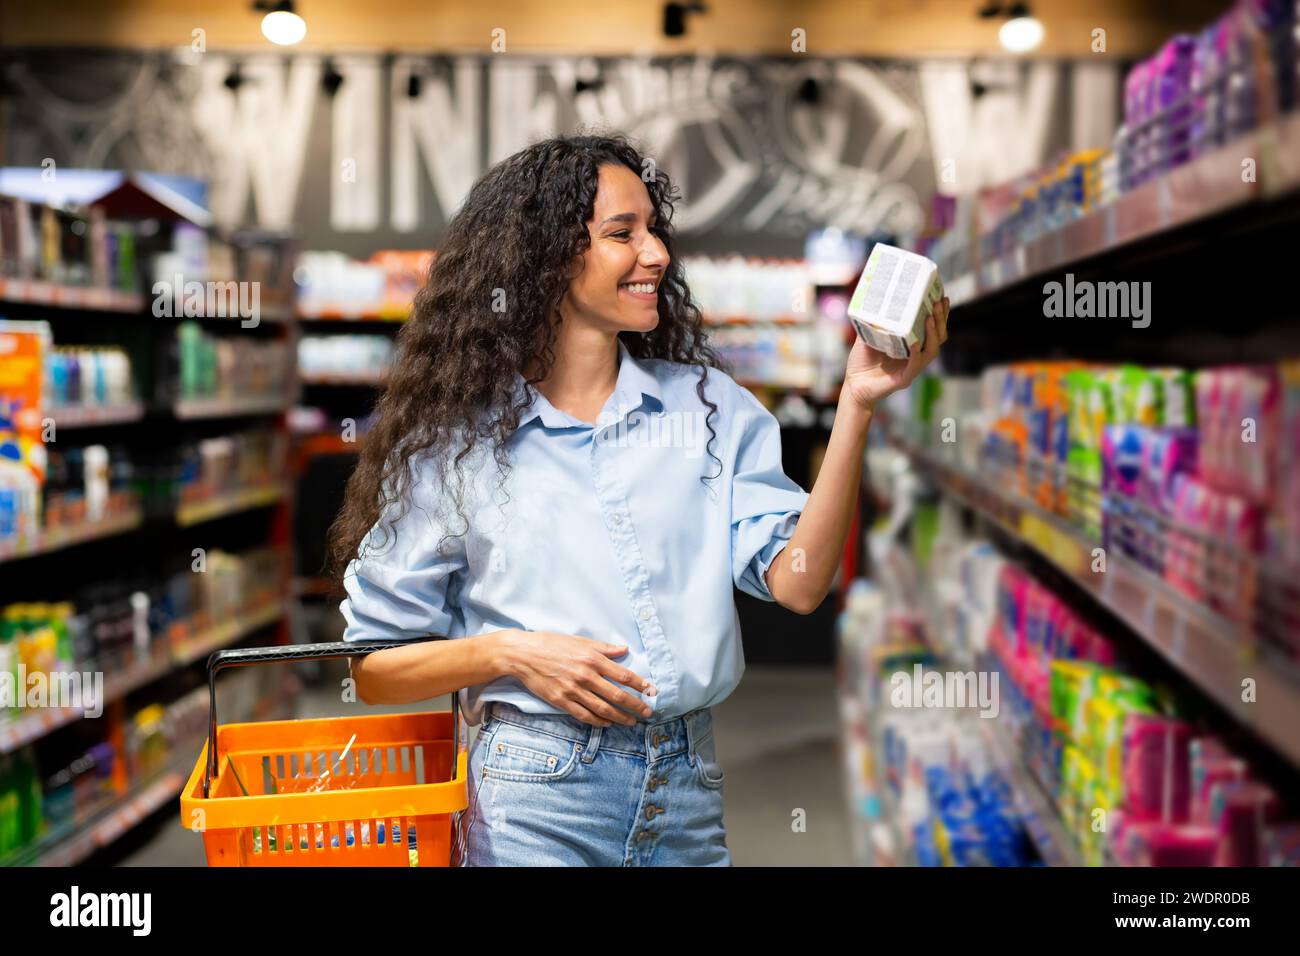 Fröhliche junge Frau mit lockigem Haar wählt Produkte im Supermarkt aus, die beispielhaft für gesunde Lebensweise und Einkaufsgewohnheiten sind. Stockfoto